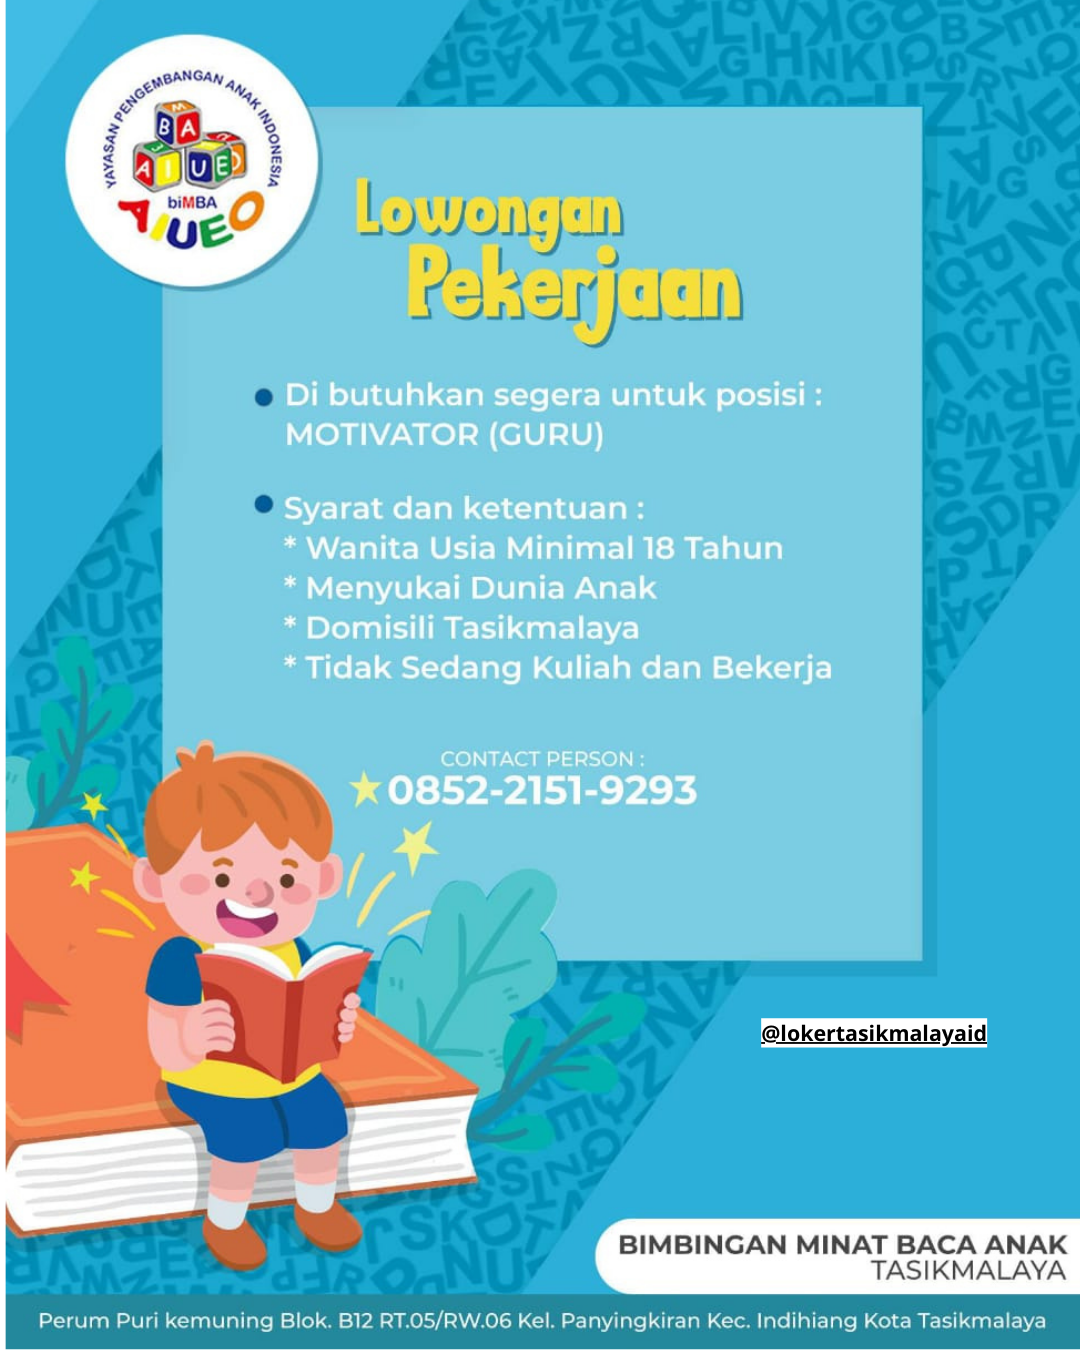 Lowongan-Kerja-Yayasan-Pengembangan-Anak-Indonesia-Bimba-Aiueo-Tasikmalaya